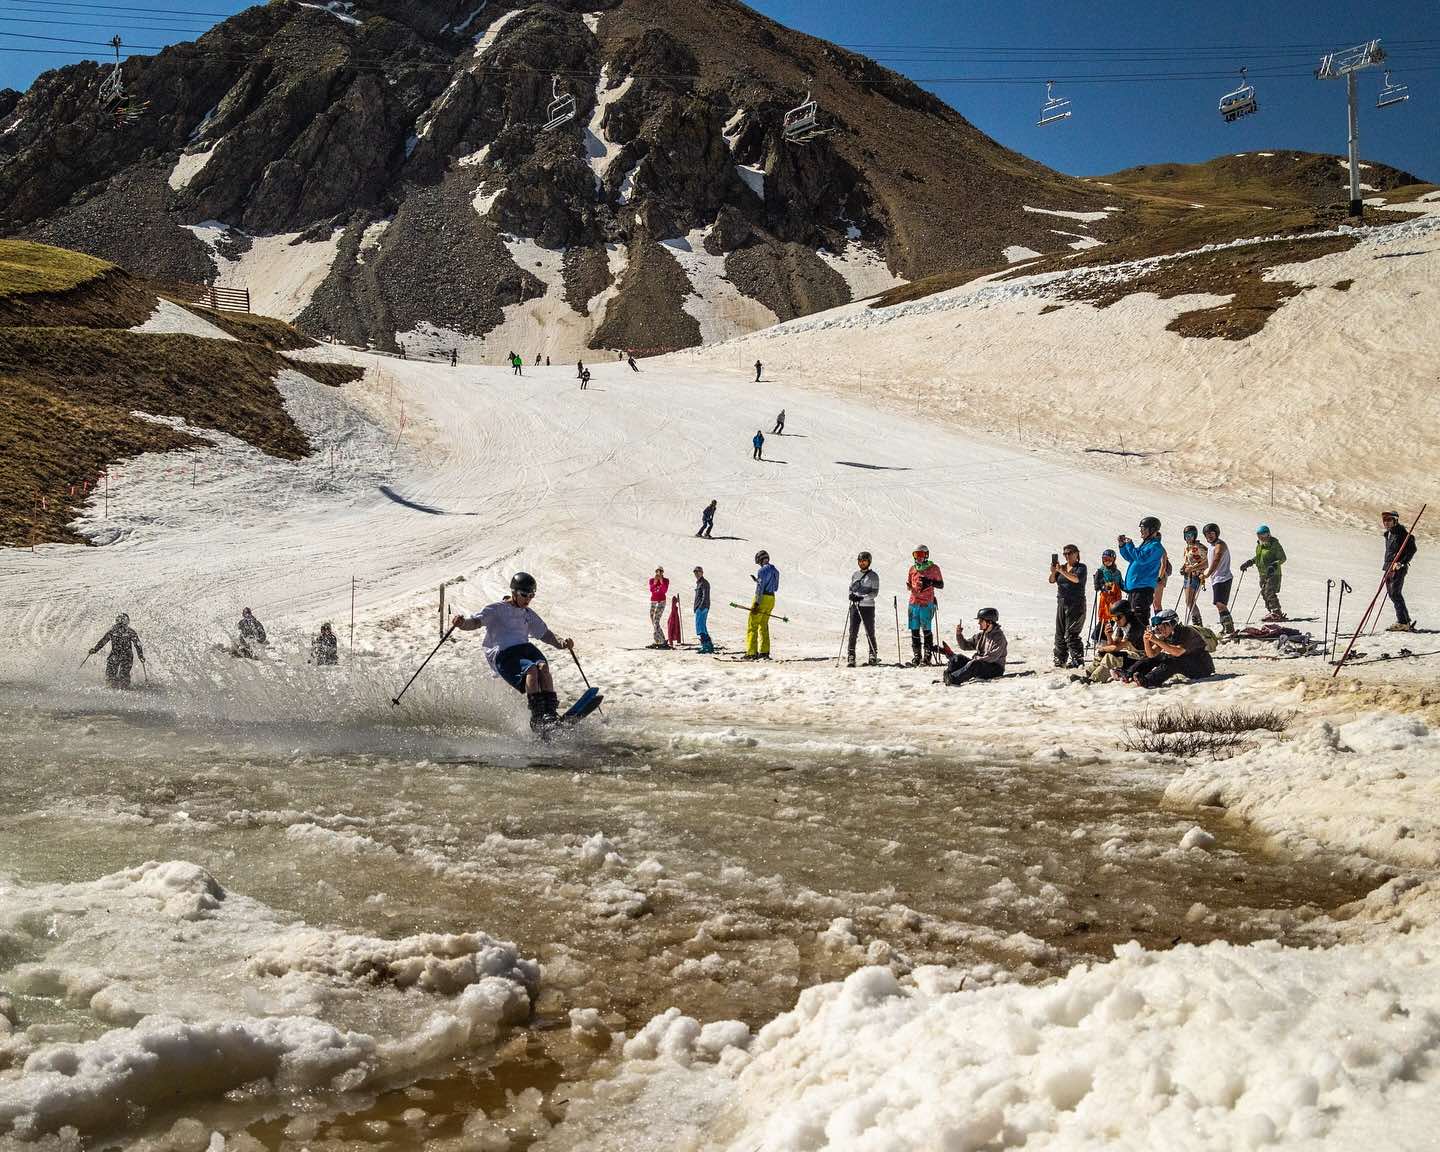 Arapahoe Basin cierra una de las temporadas más largas del mundo con 222 días de esquí